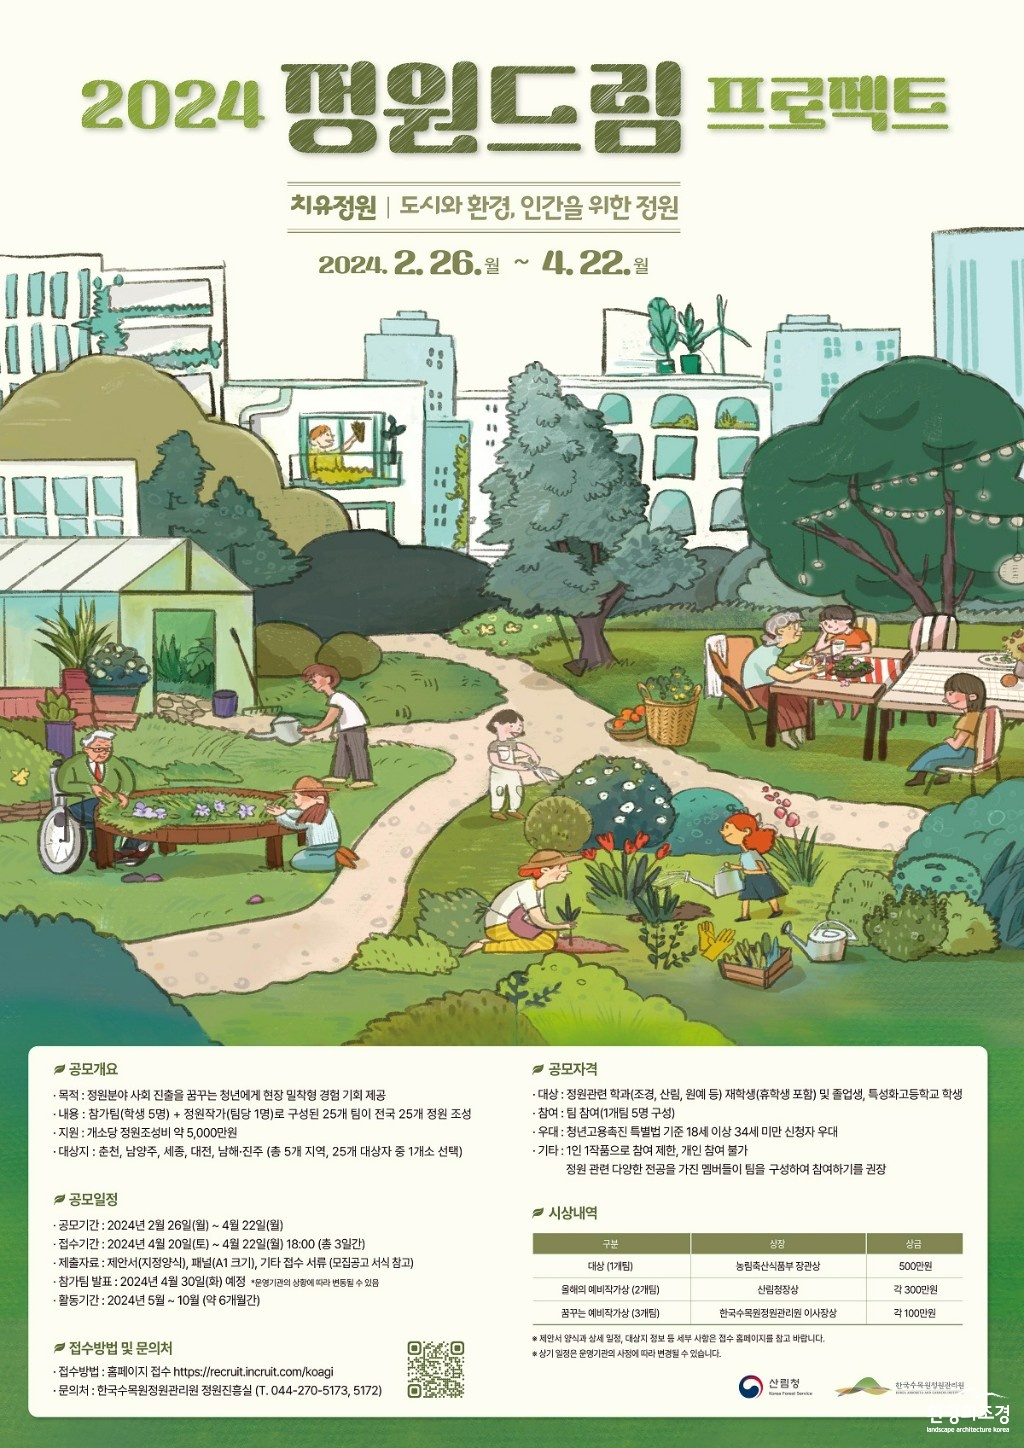 참고자료1. 정원드림 프로젝트 공모전(포스터).jpg